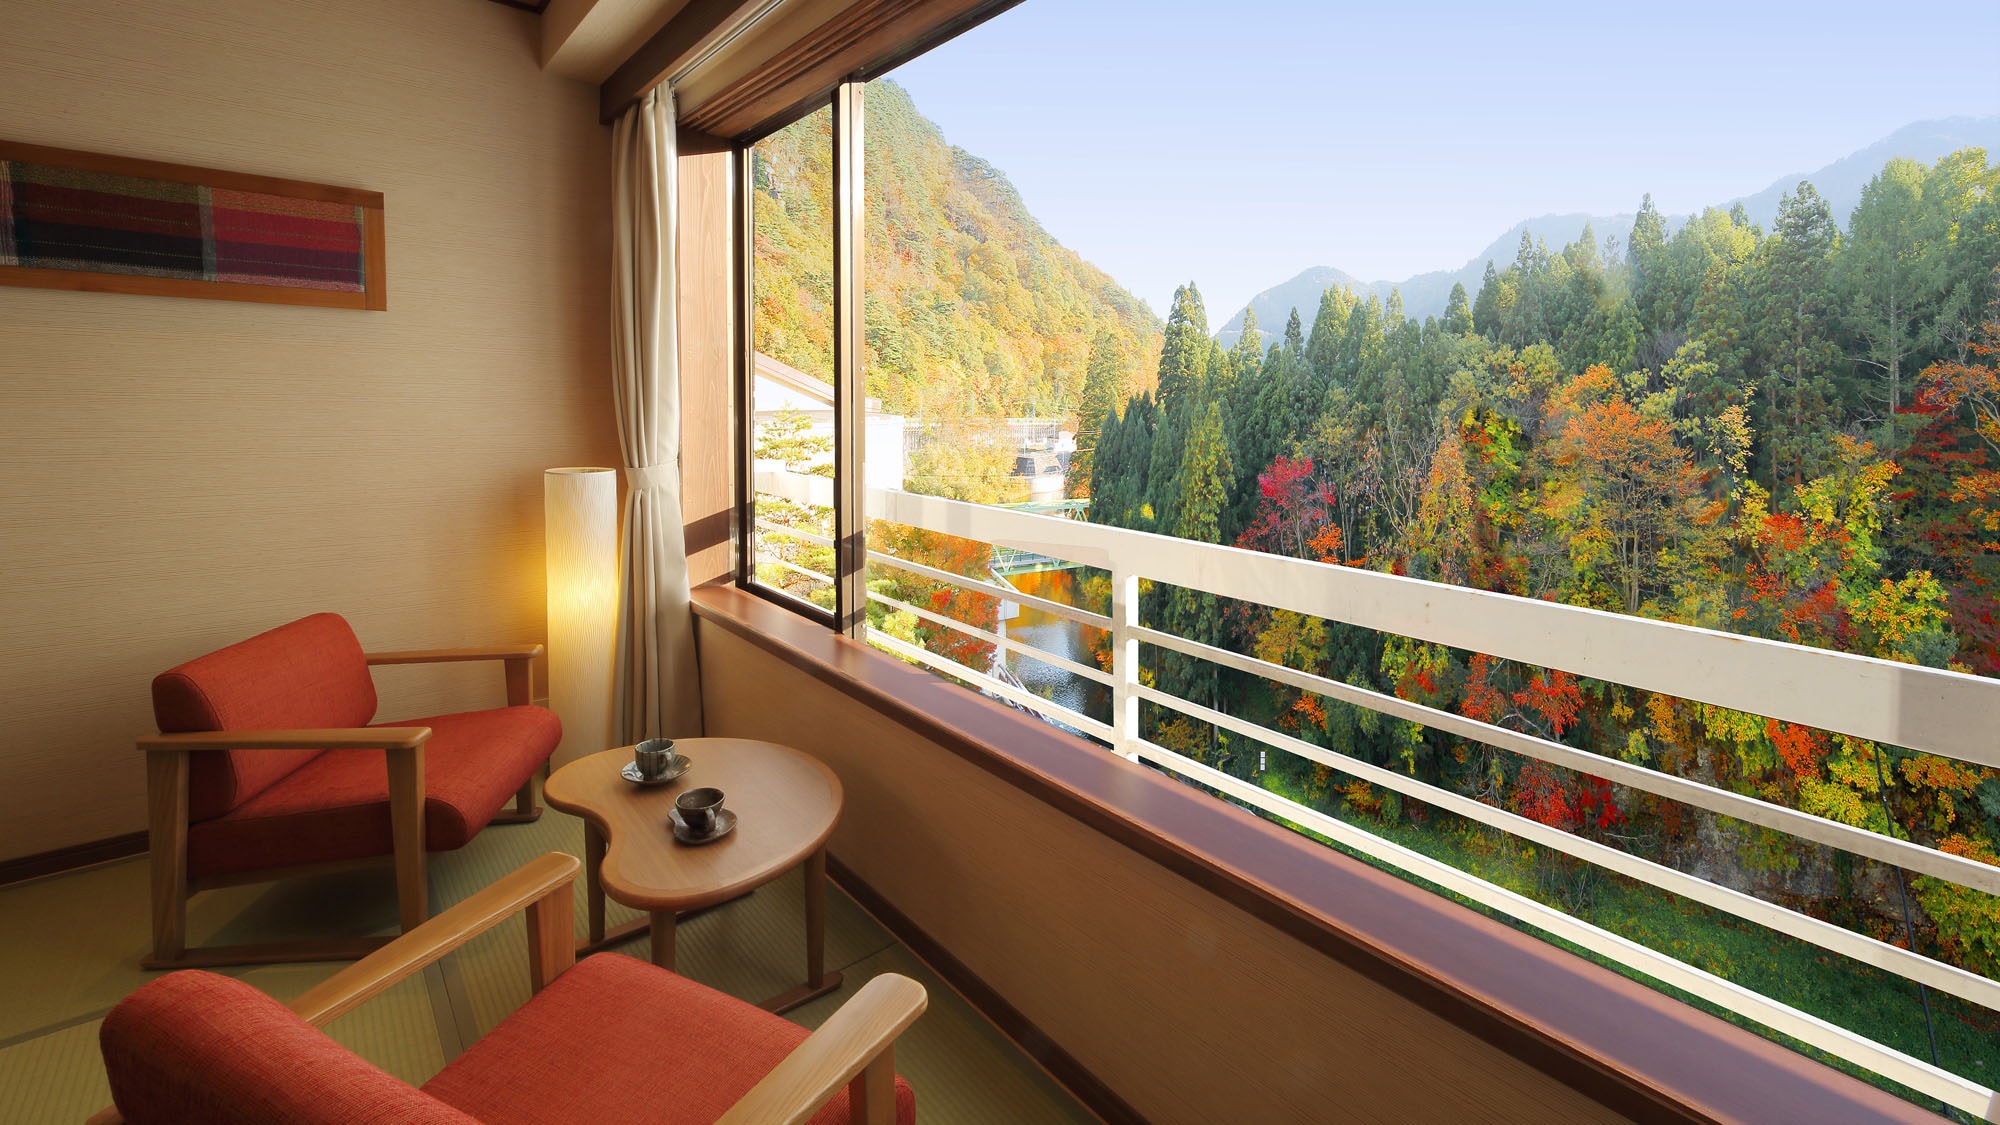 Hotel information and reservations for Hotel Shidotaira | Rakuten